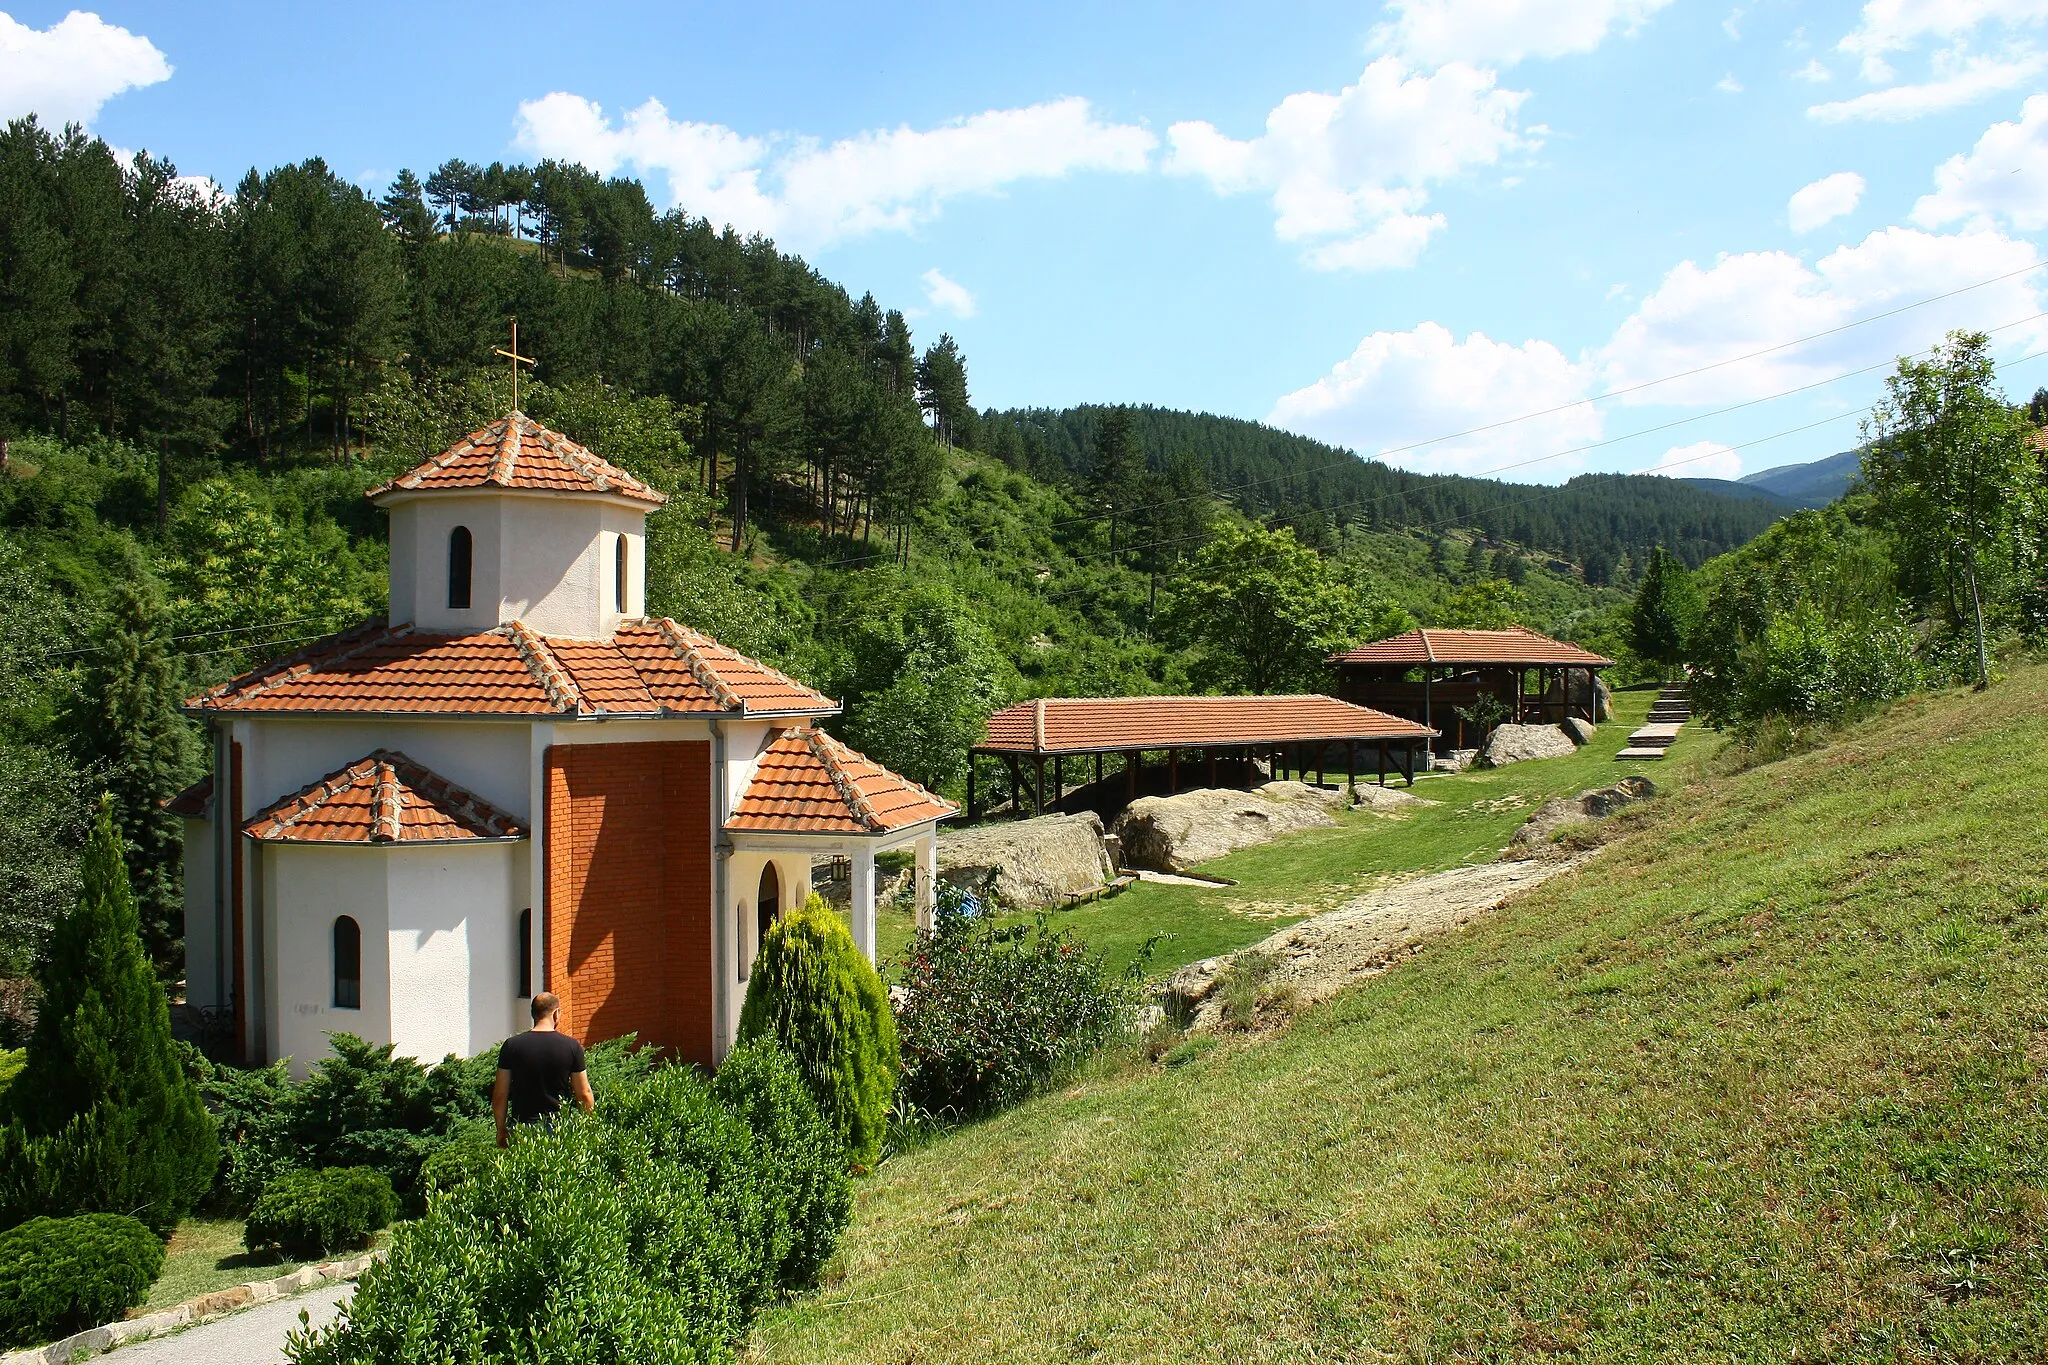 Image of Delcevo